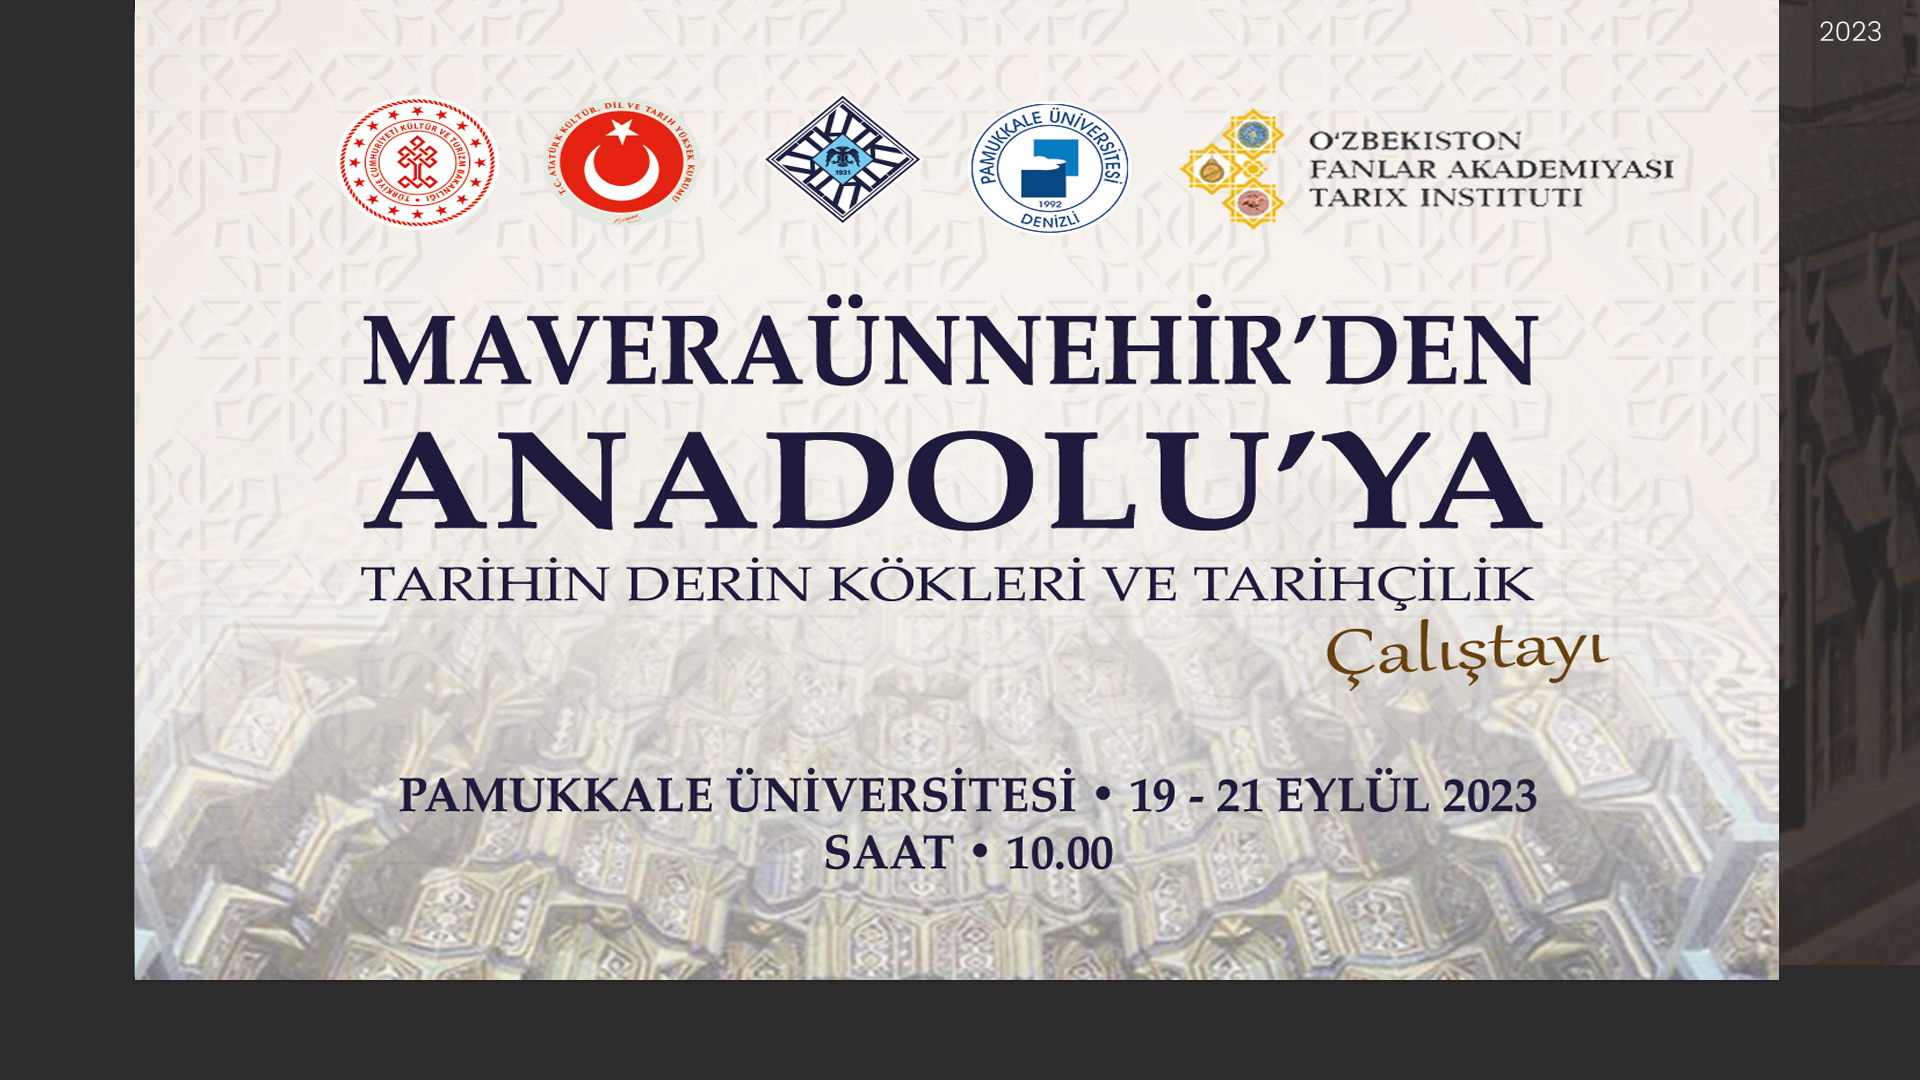  Maveraünnehir’den Anadolu’ya  Tarihin Derin Kökleri Ve Tarihçilik Çalıştayı